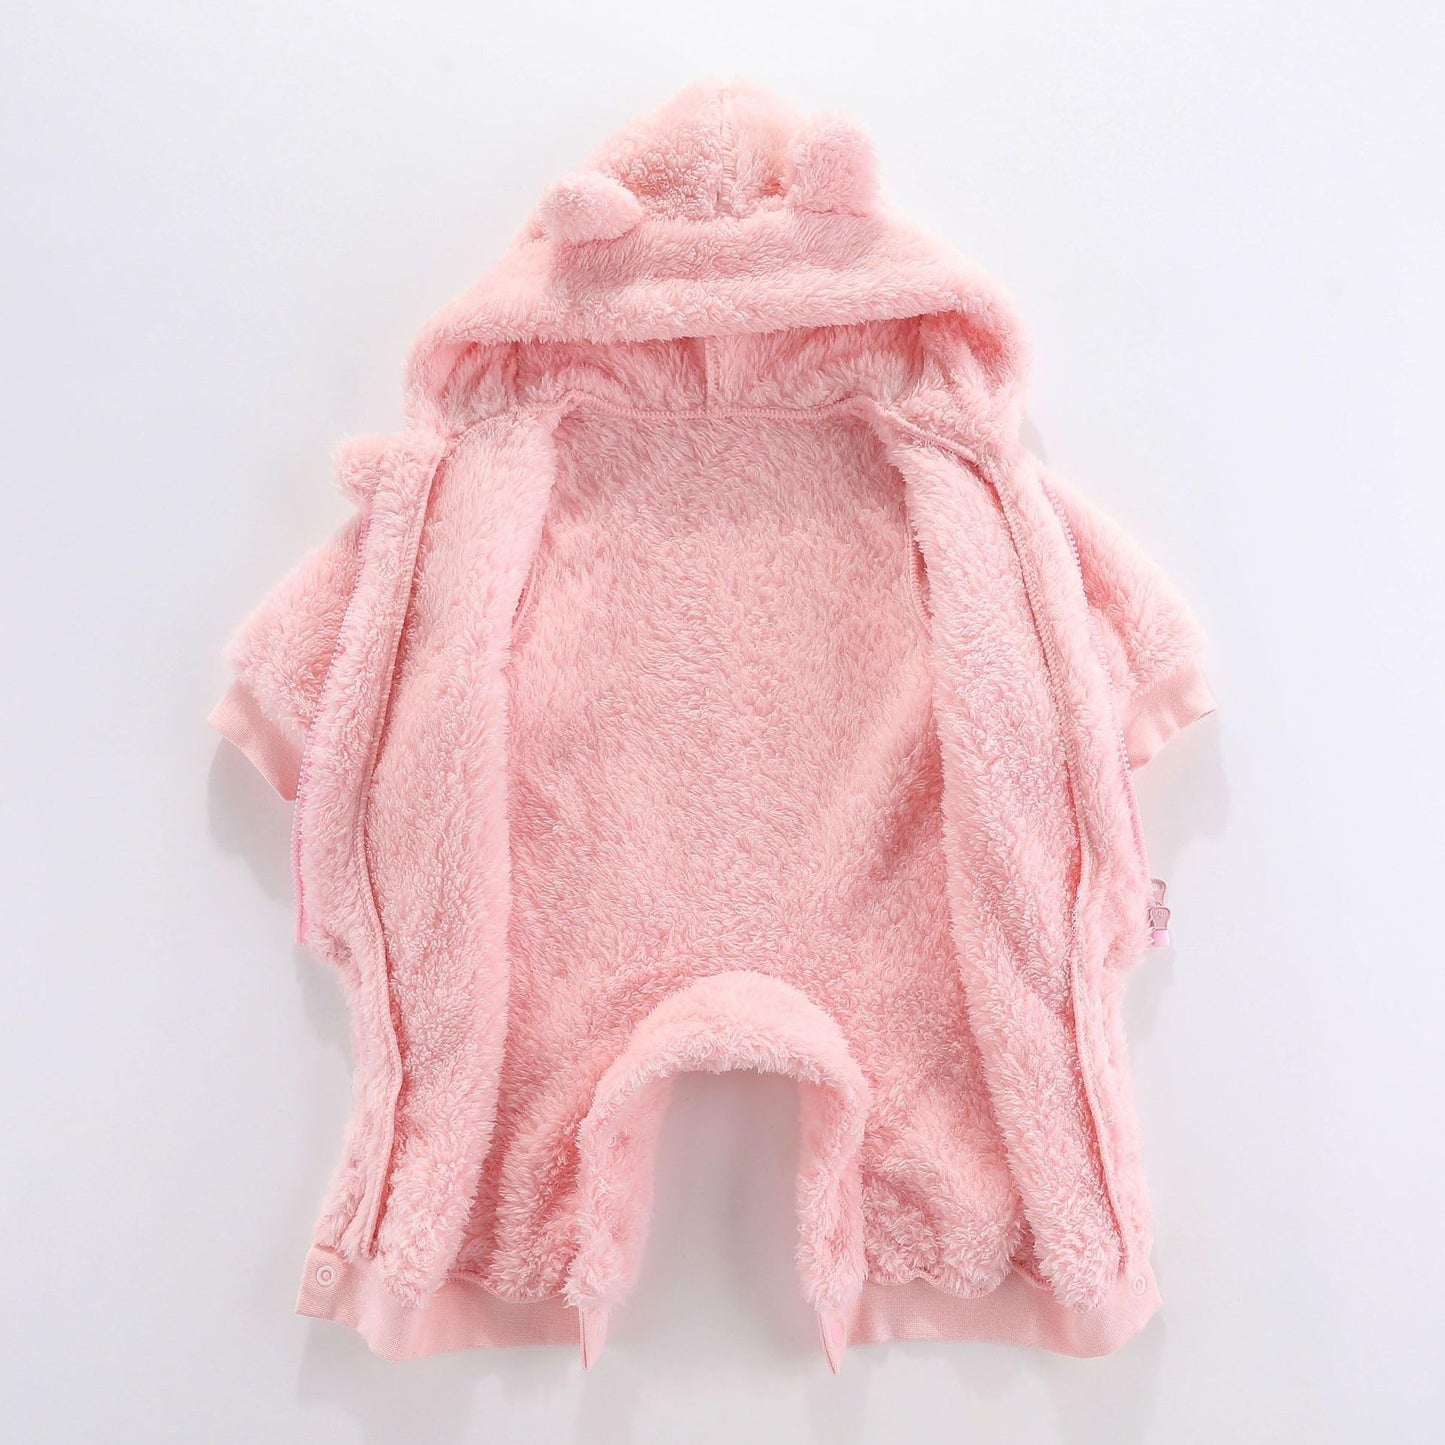 YMYDYFC Baby Fleece Hooded Romper Winter Outwear Jumpsuit Snowsuit Bear Ear Outfits for Boys Girls (3 -6 Months)